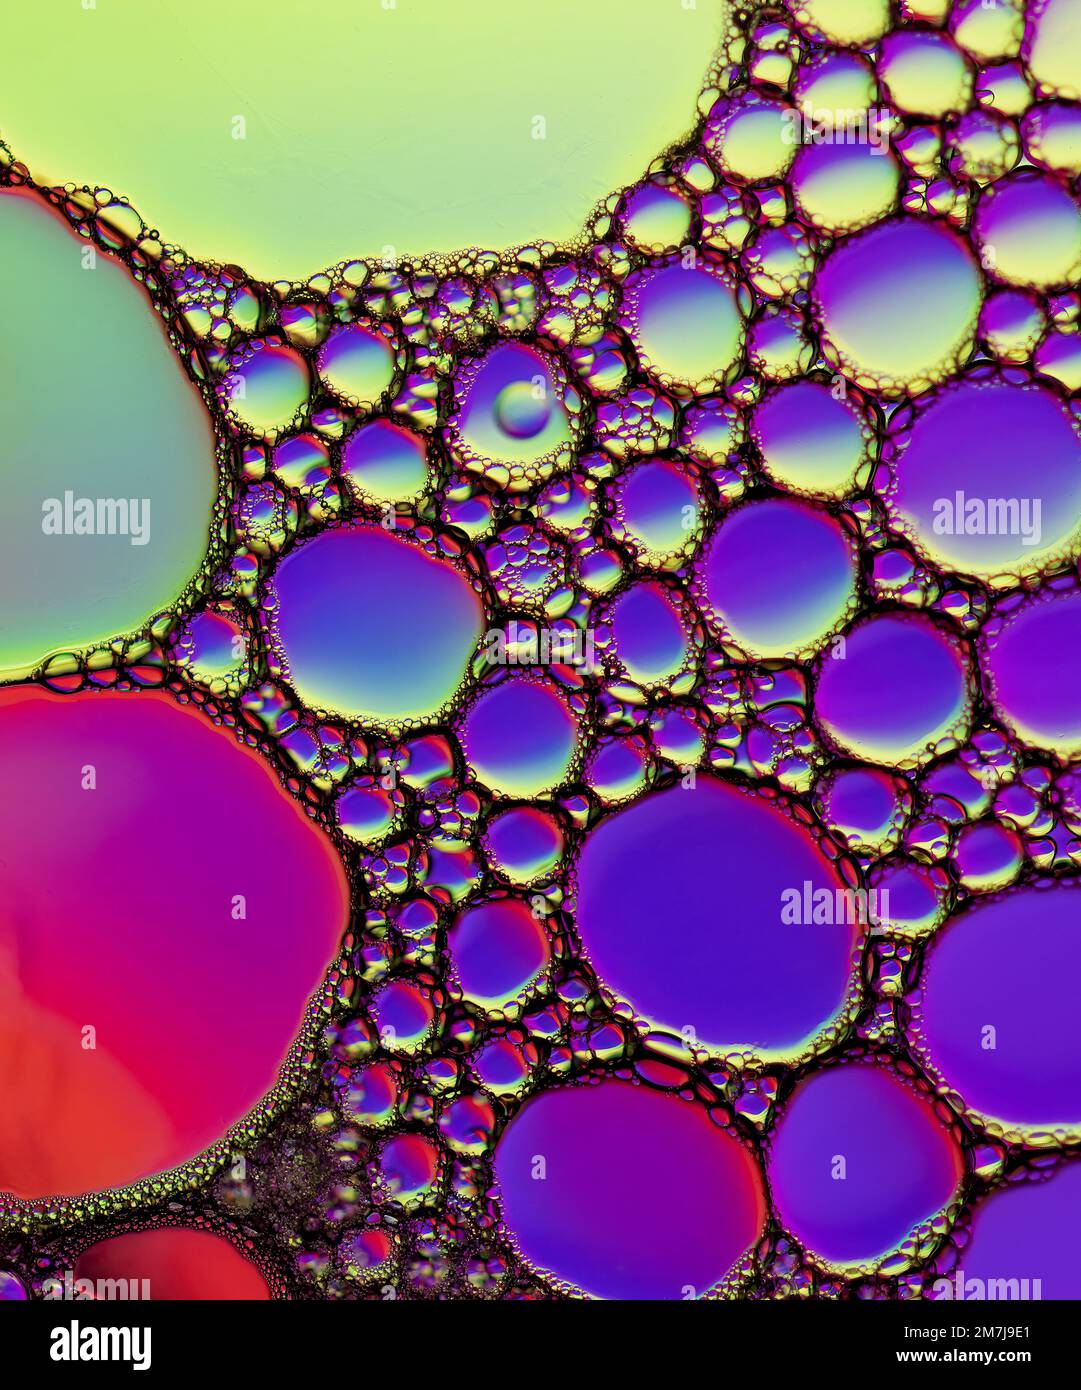 Motivi colorati di diffrazione della luce formati da goccioline di olio che galleggiano sull'acqua sopra uno sfondo colorato Foto Stock